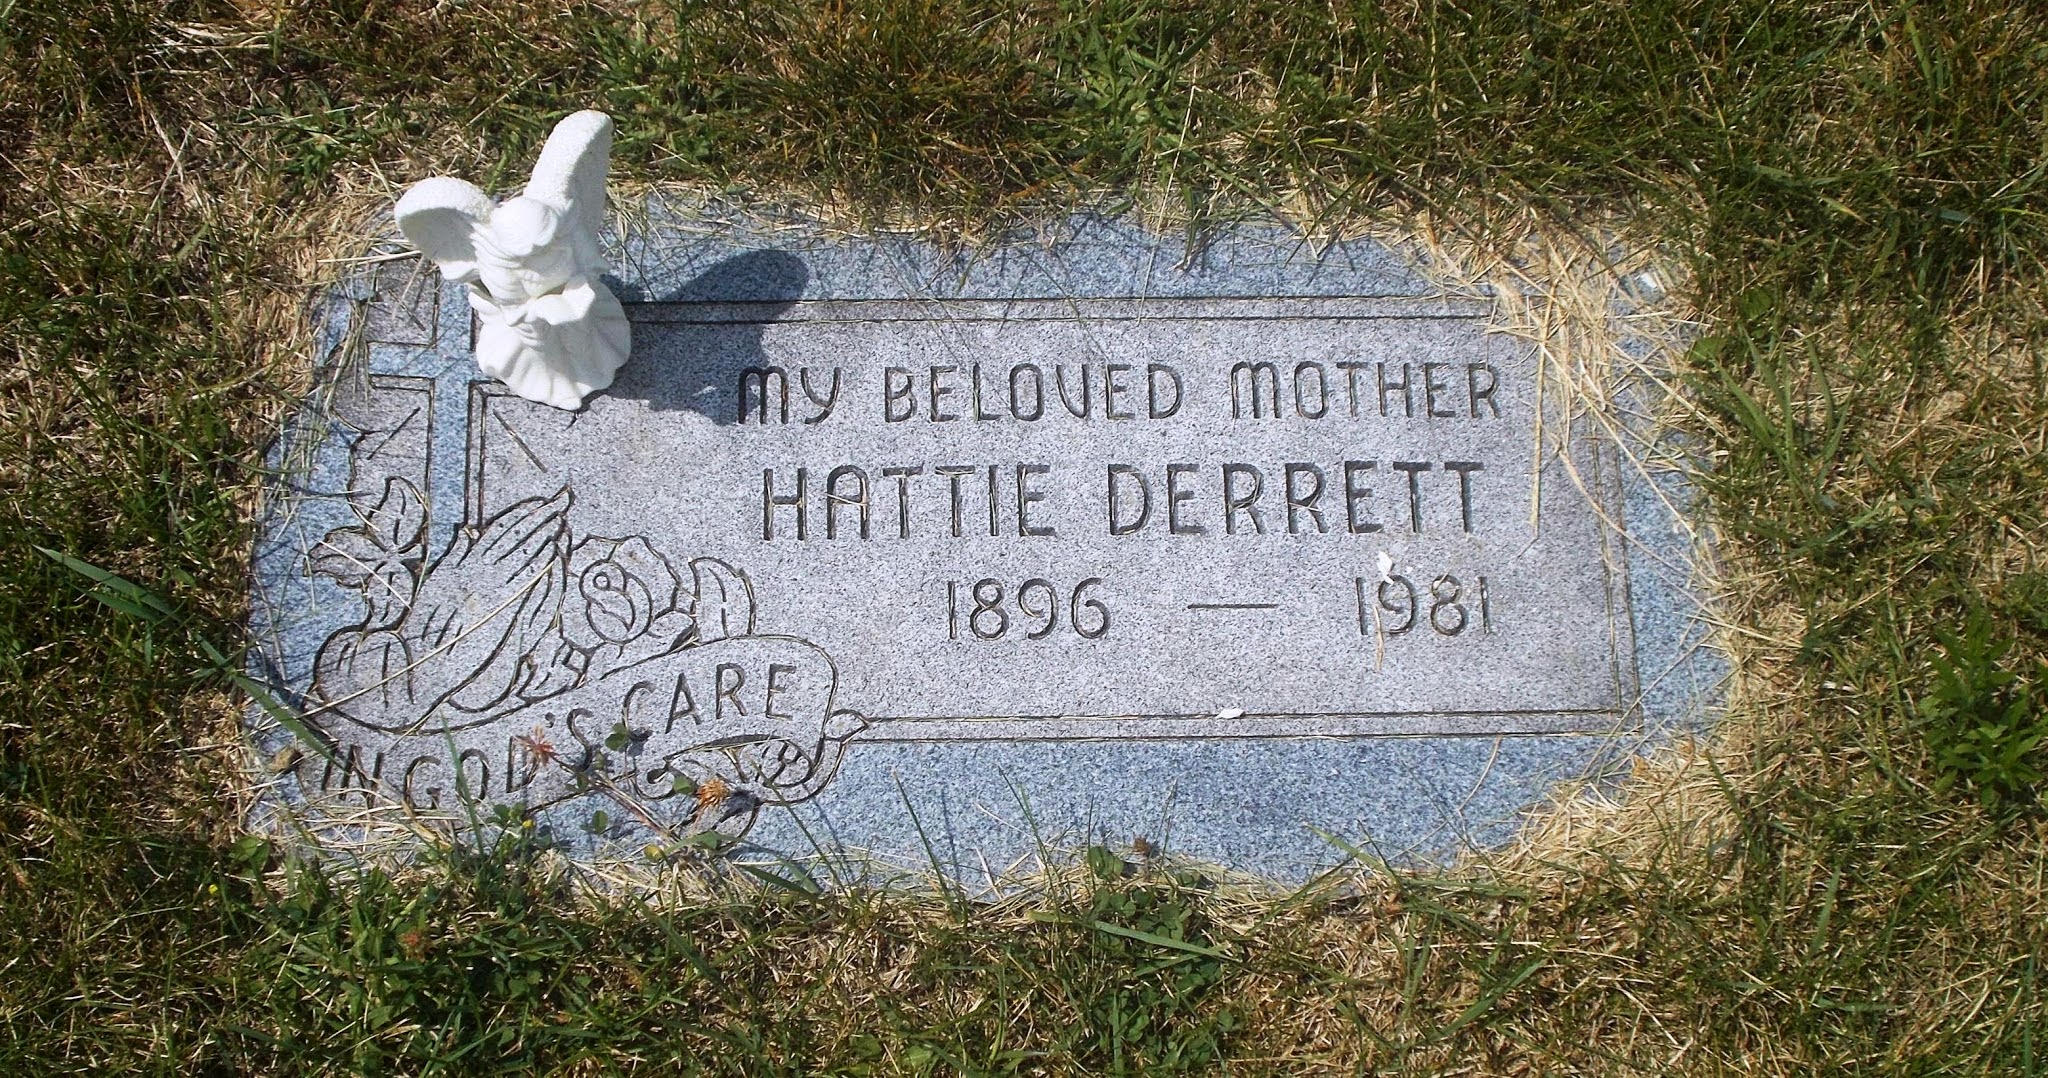 Hattie Derrett